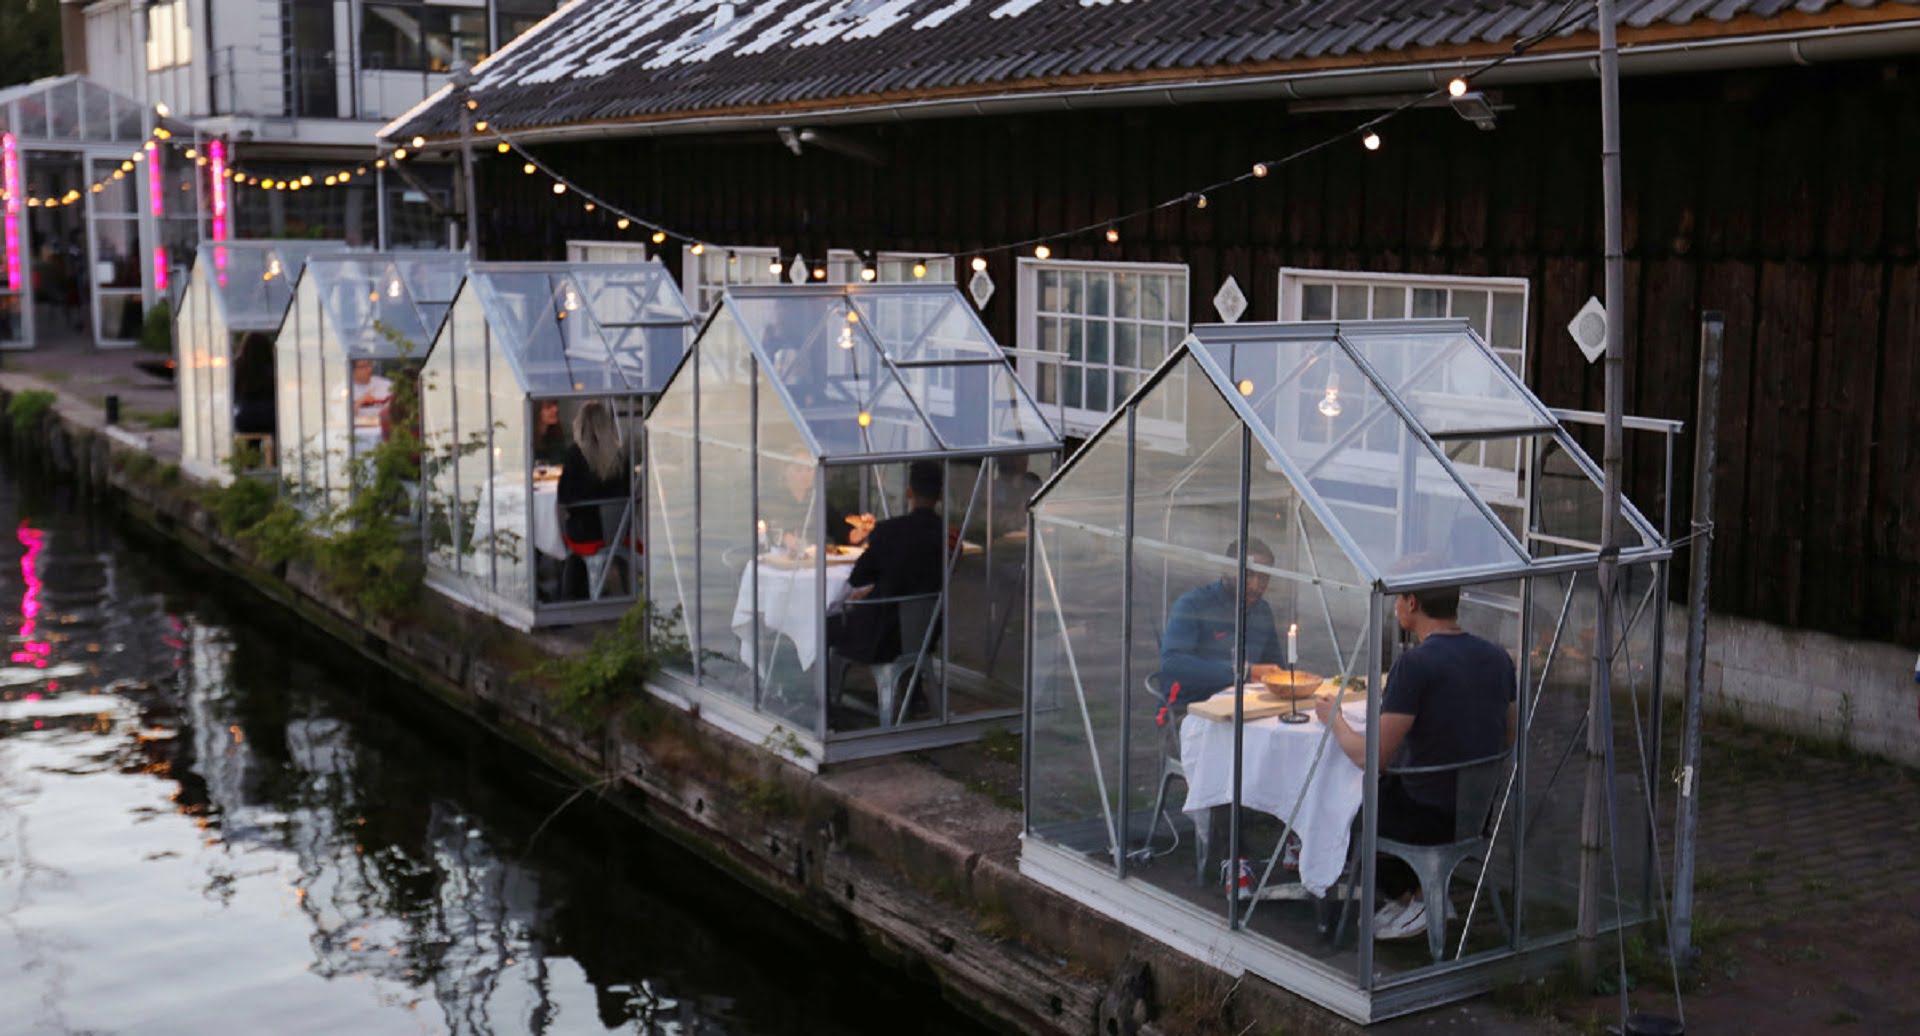 گلخانه قرنطینه: رستورانی در آمستردام روش جدیدی برای فاصله اجتماعی معرفی کرده است